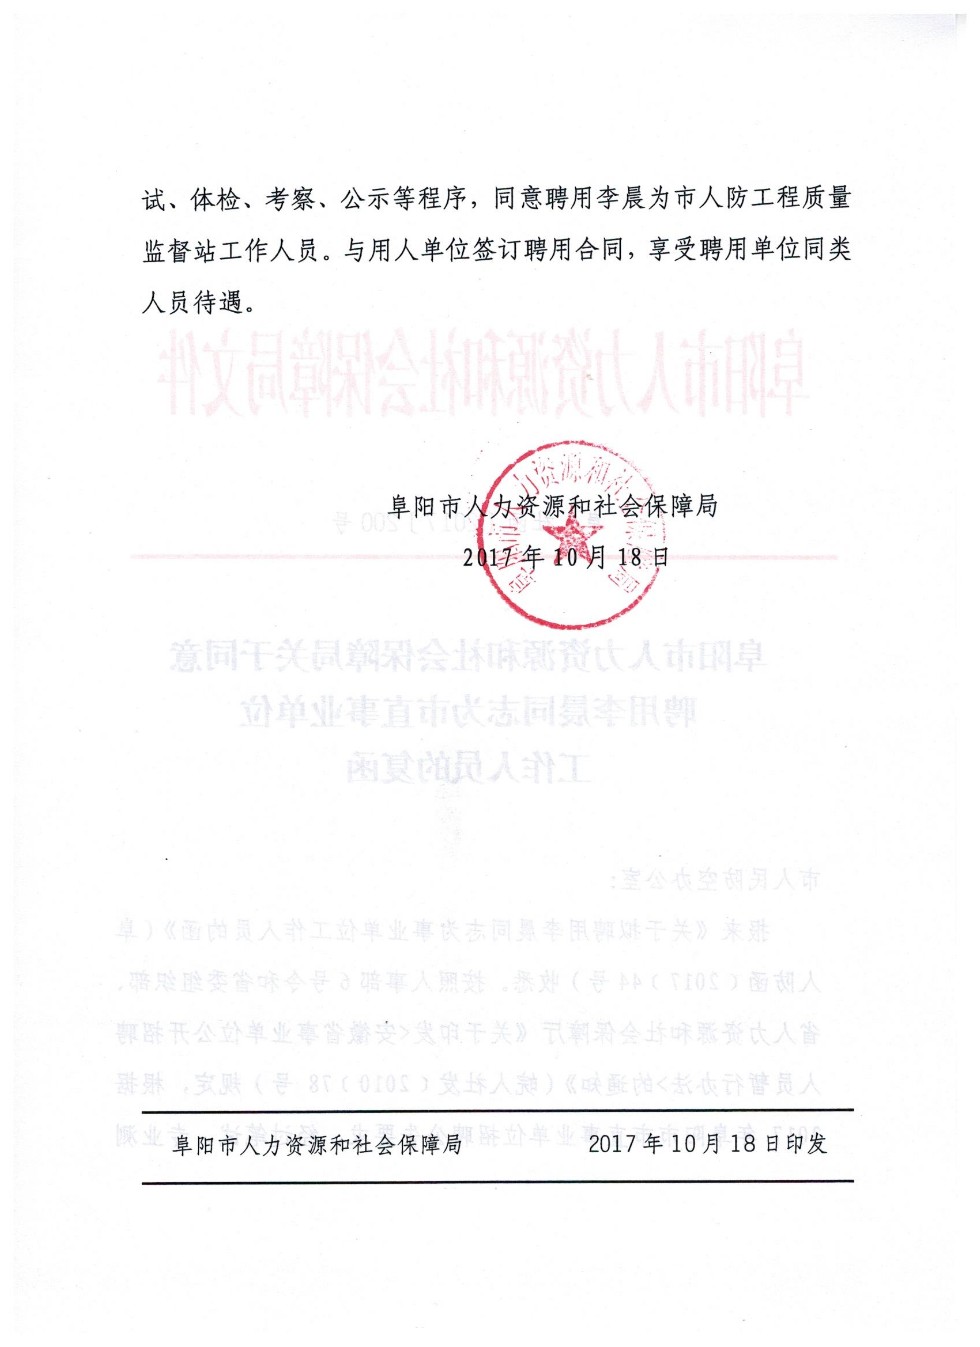 市人社局关于同意聘用李晨同志为市直事业单位工作人员的复函 002jpg